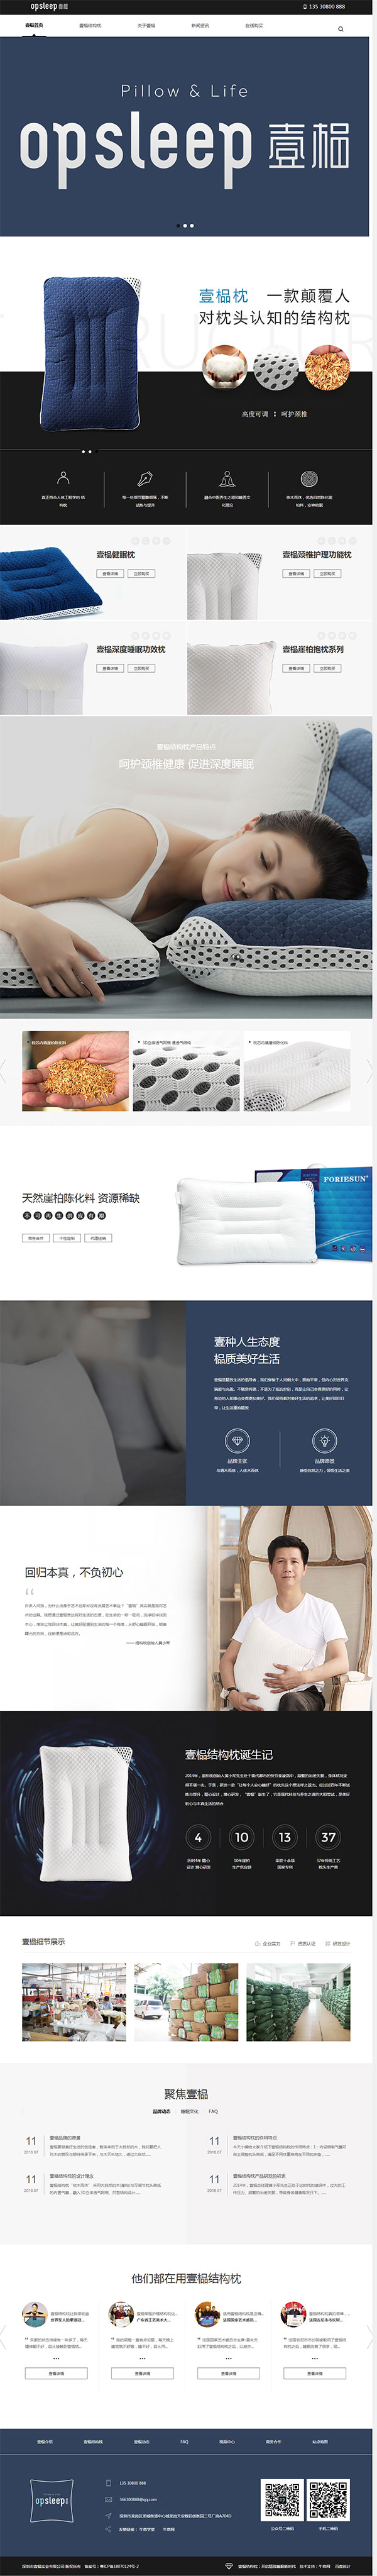 壹榀枕-营销型网站页面